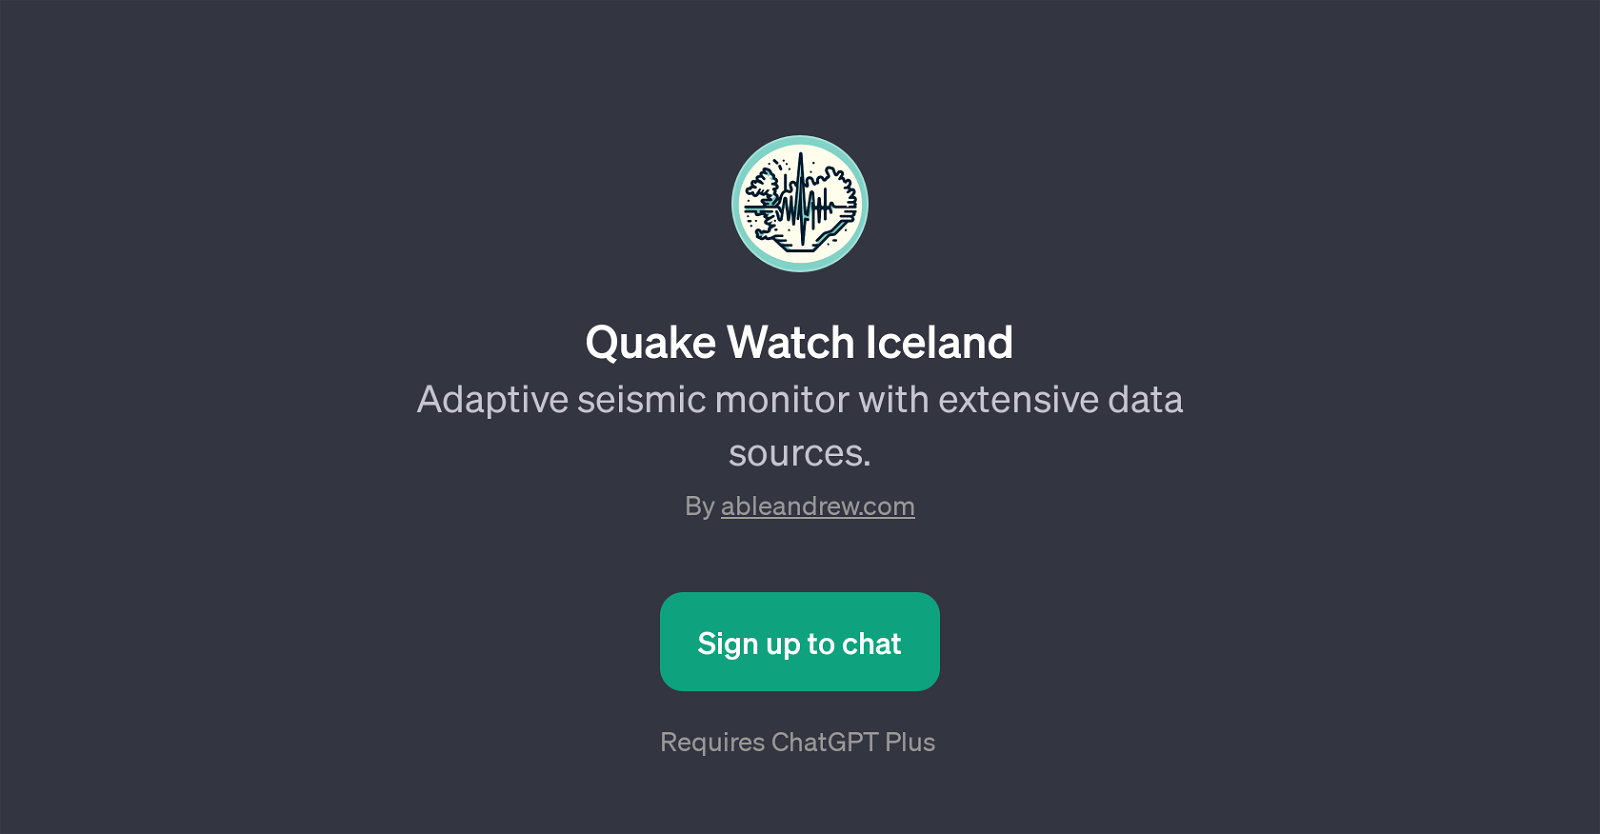 Quake Watch Iceland website